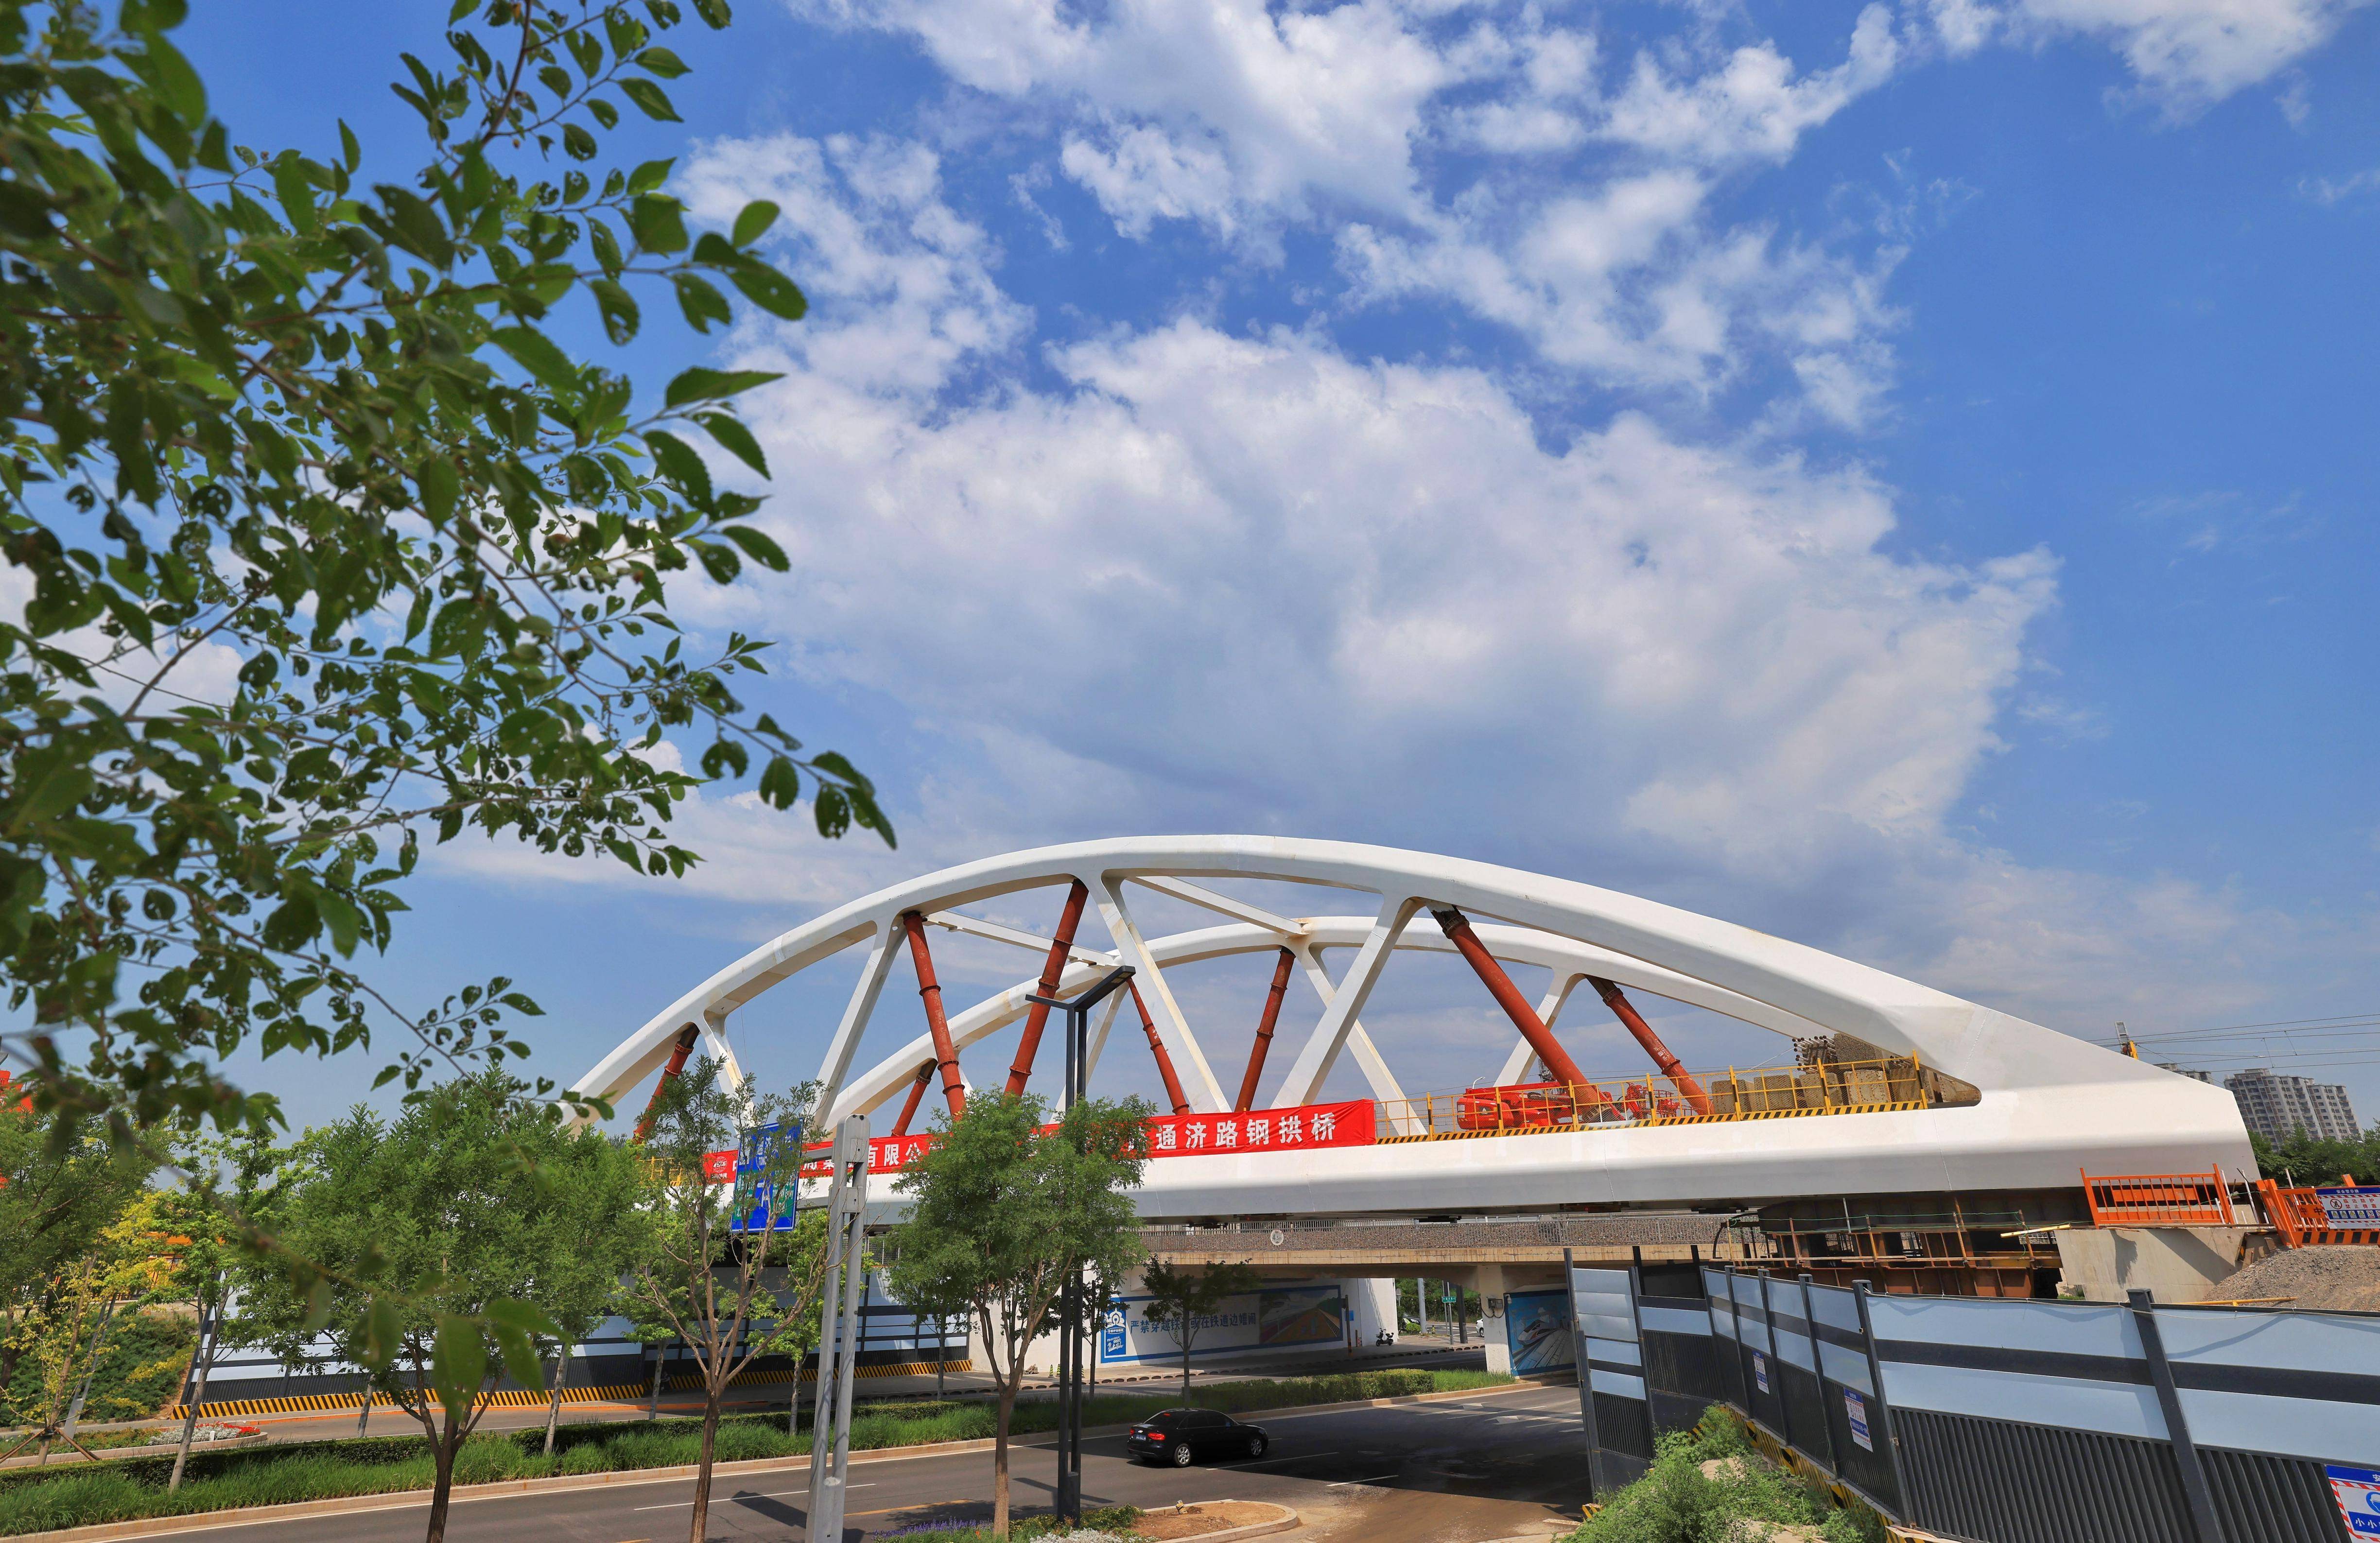 突破性进展!京唐城际铁路通济路钢拱桥完成顶推作业